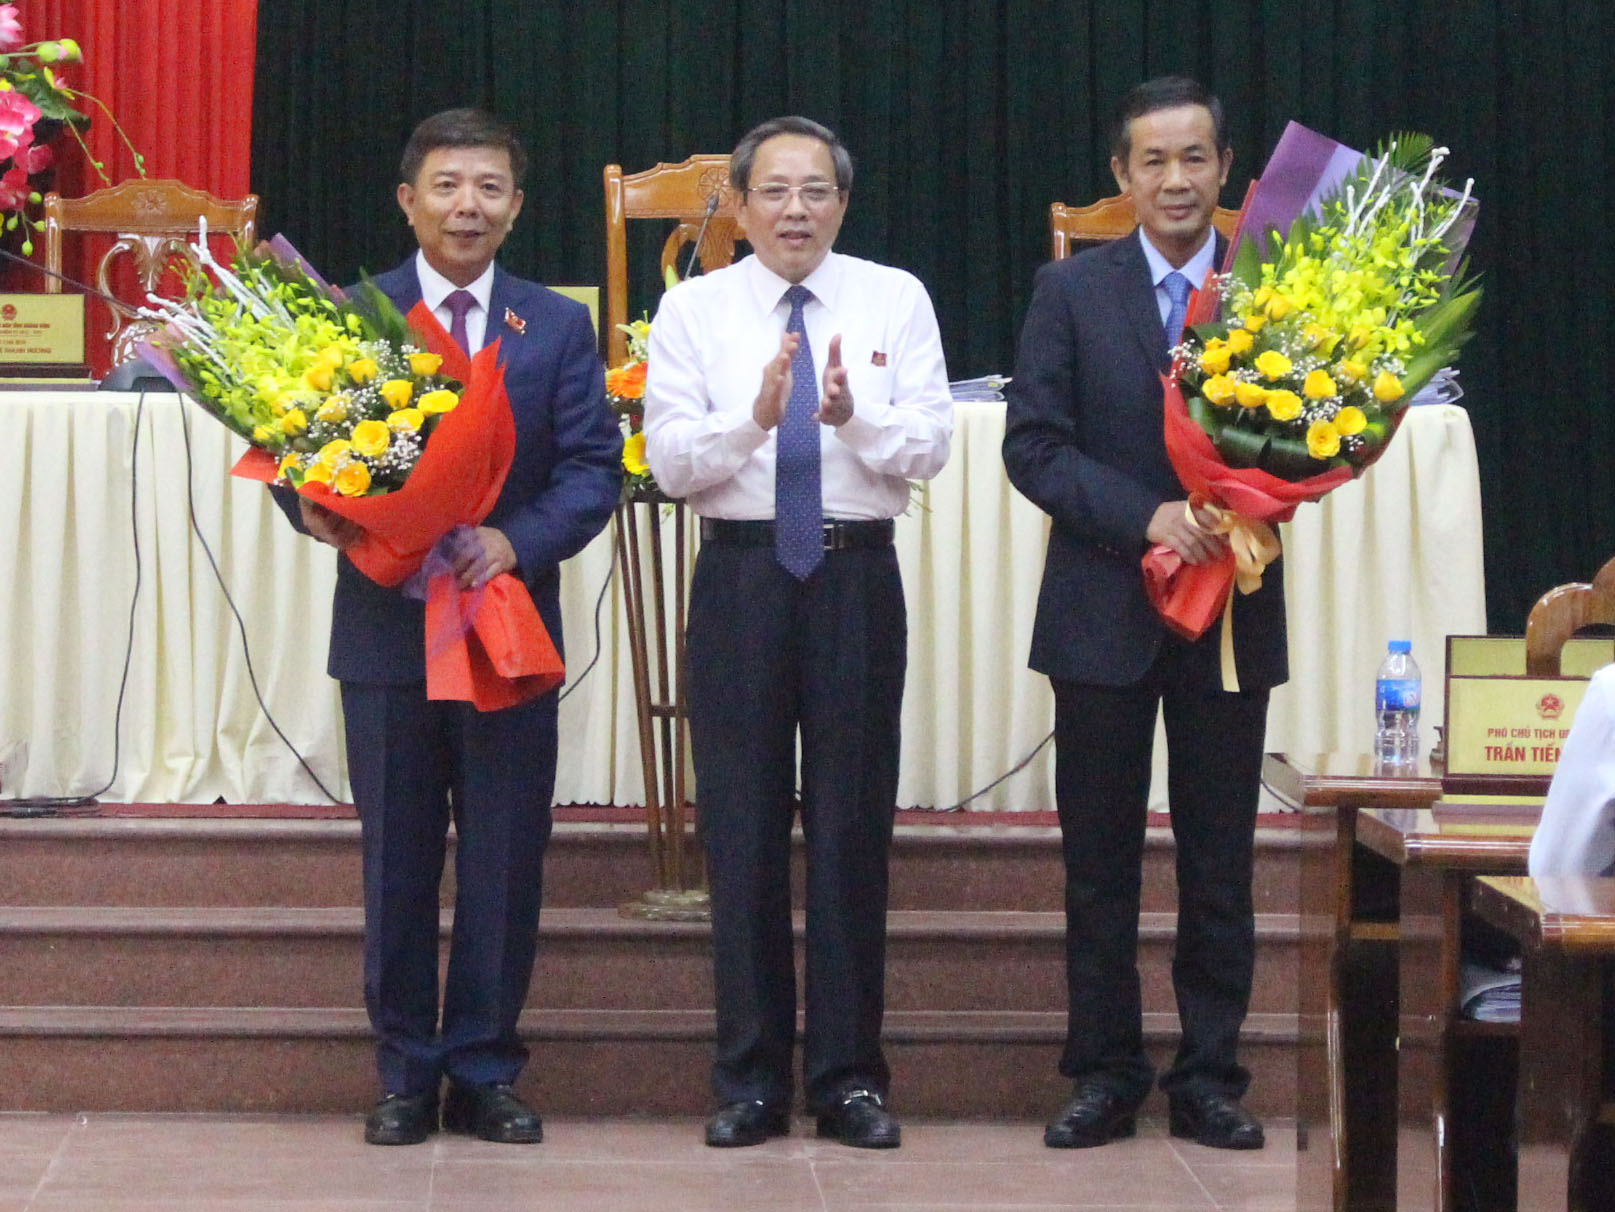 Đồng chí Hoàng Đăng Quang tặng hoa chúc mừng đồng chí Trần Công Thuật và đồng chí Nguyễn Hữu Hoài